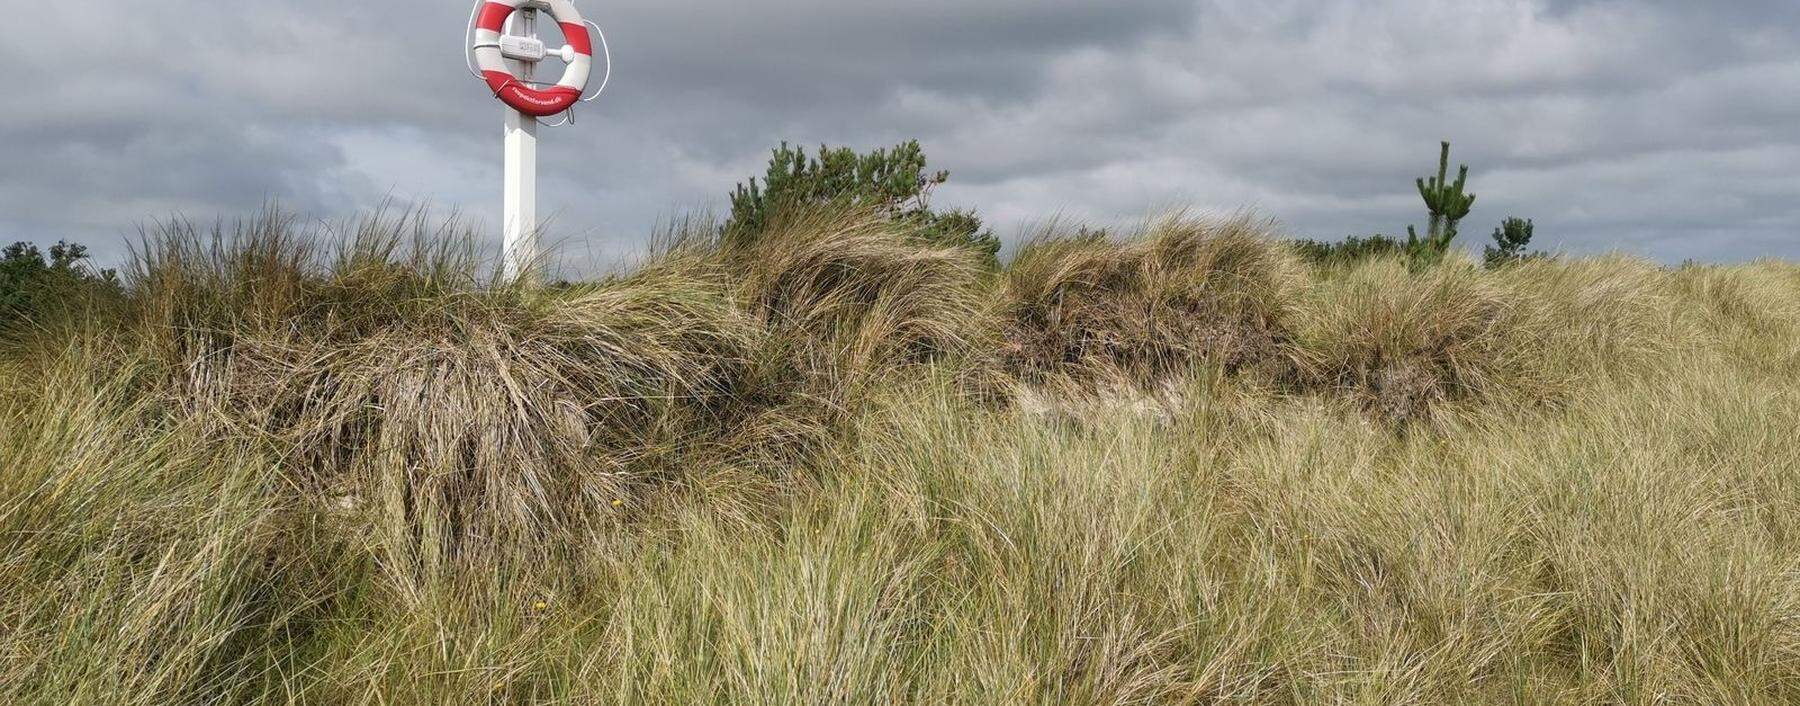 Liegt schön am Kattegat: der kleine Ferienort Øster Hurup mit seinen Dünen